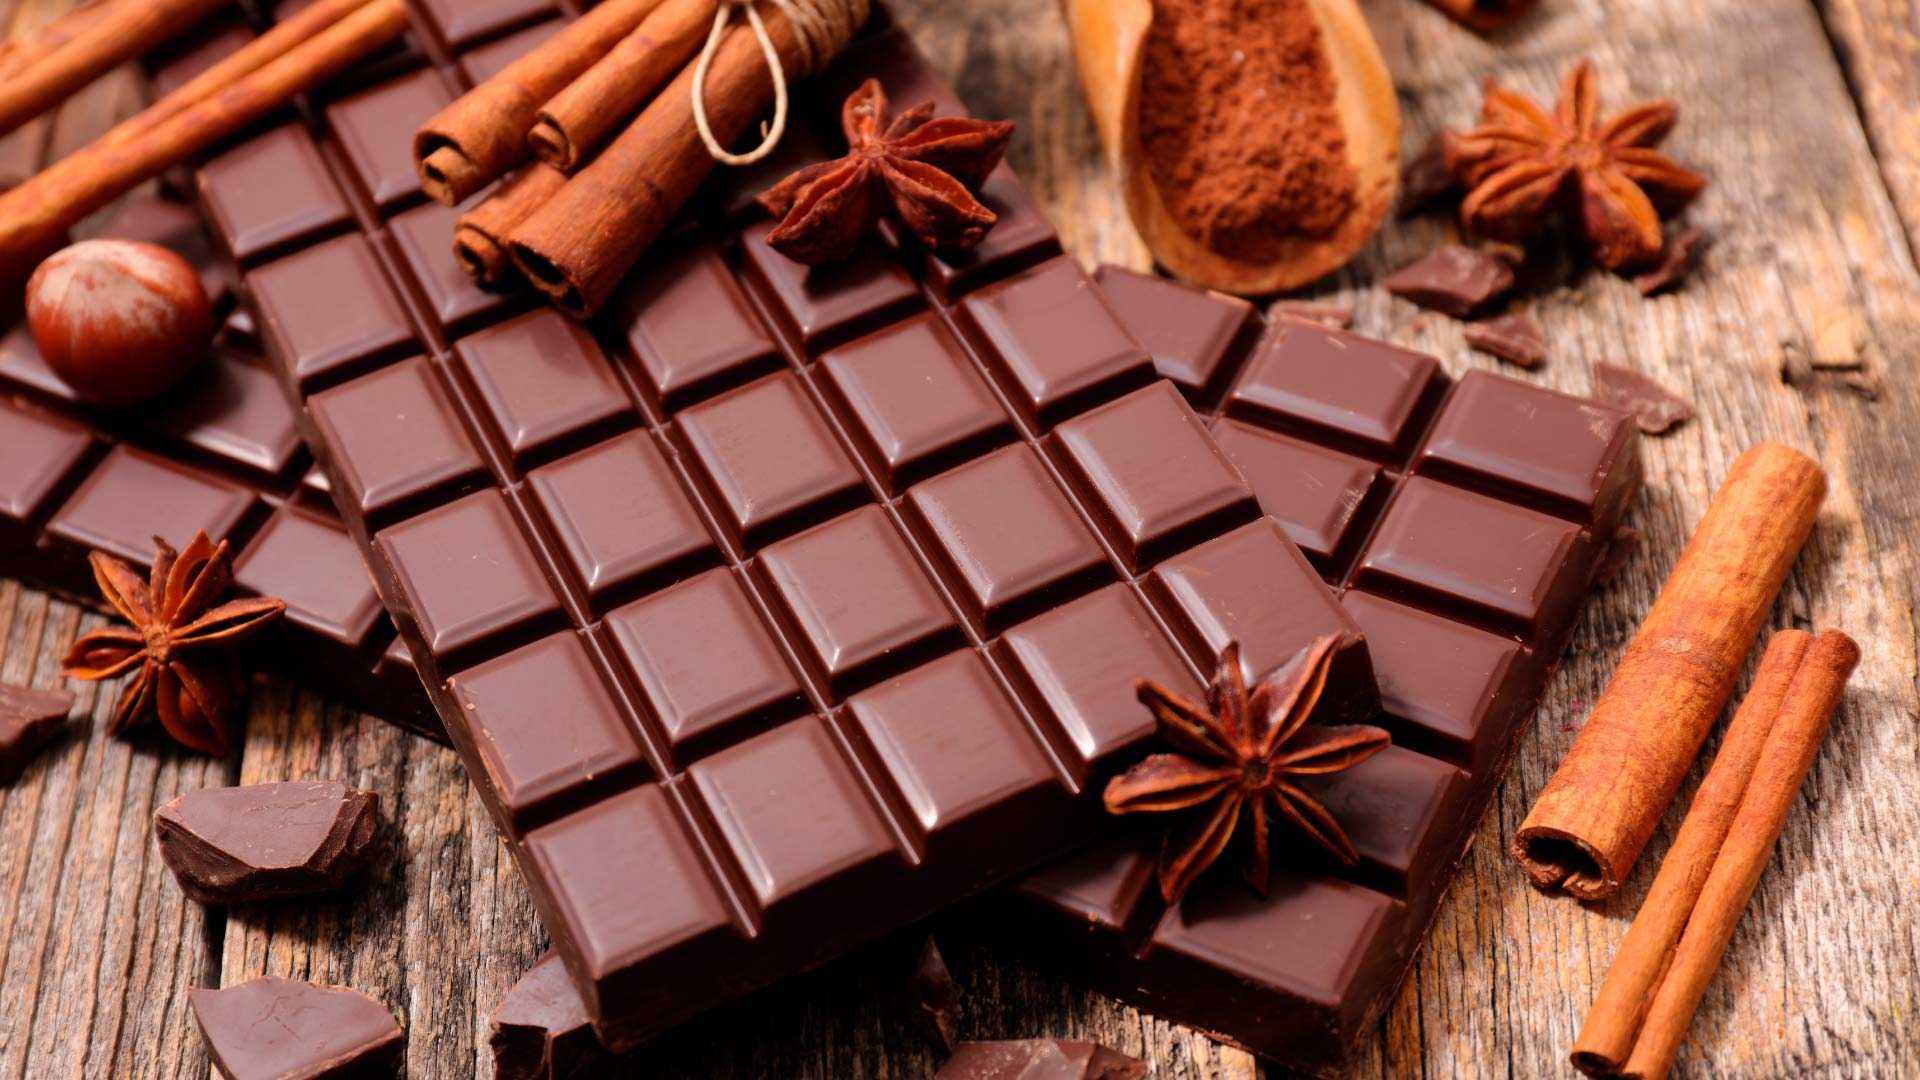 Descubriendo el poder saludable del chocolate sin azúcar en la gastronomía